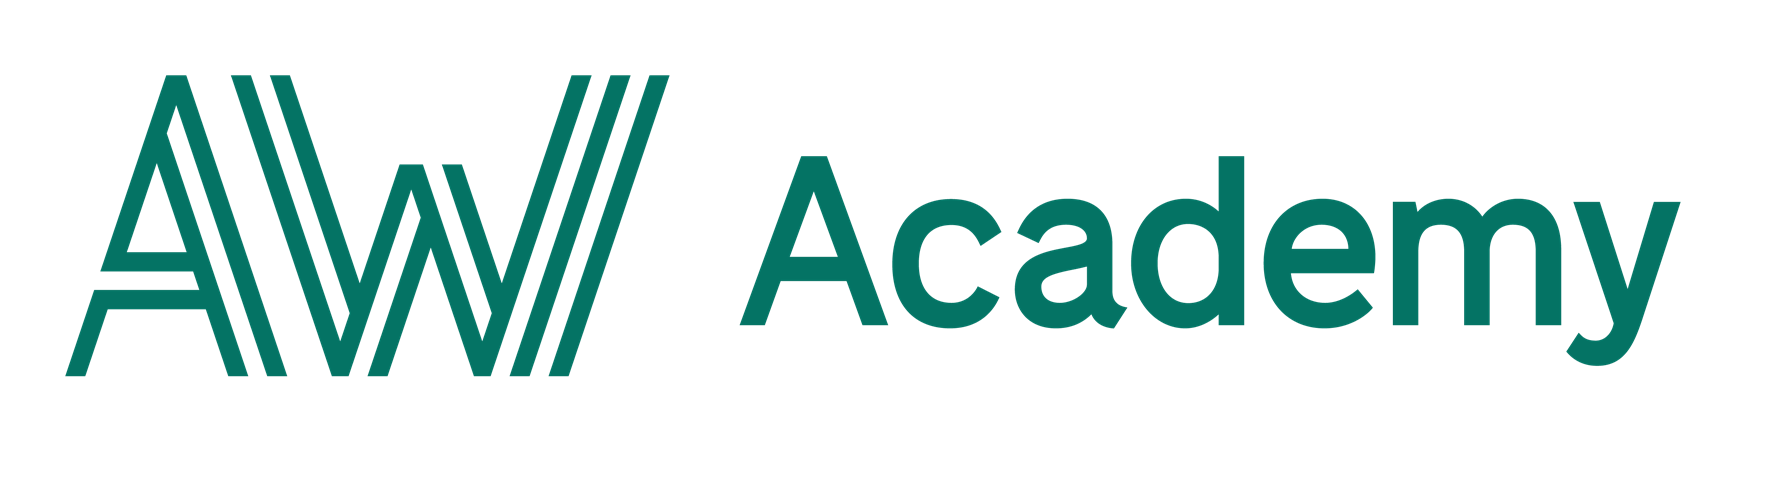 Lär dig C#.NET Fullstack via AW Academy och starta din nya karriär inom IT-branschen!